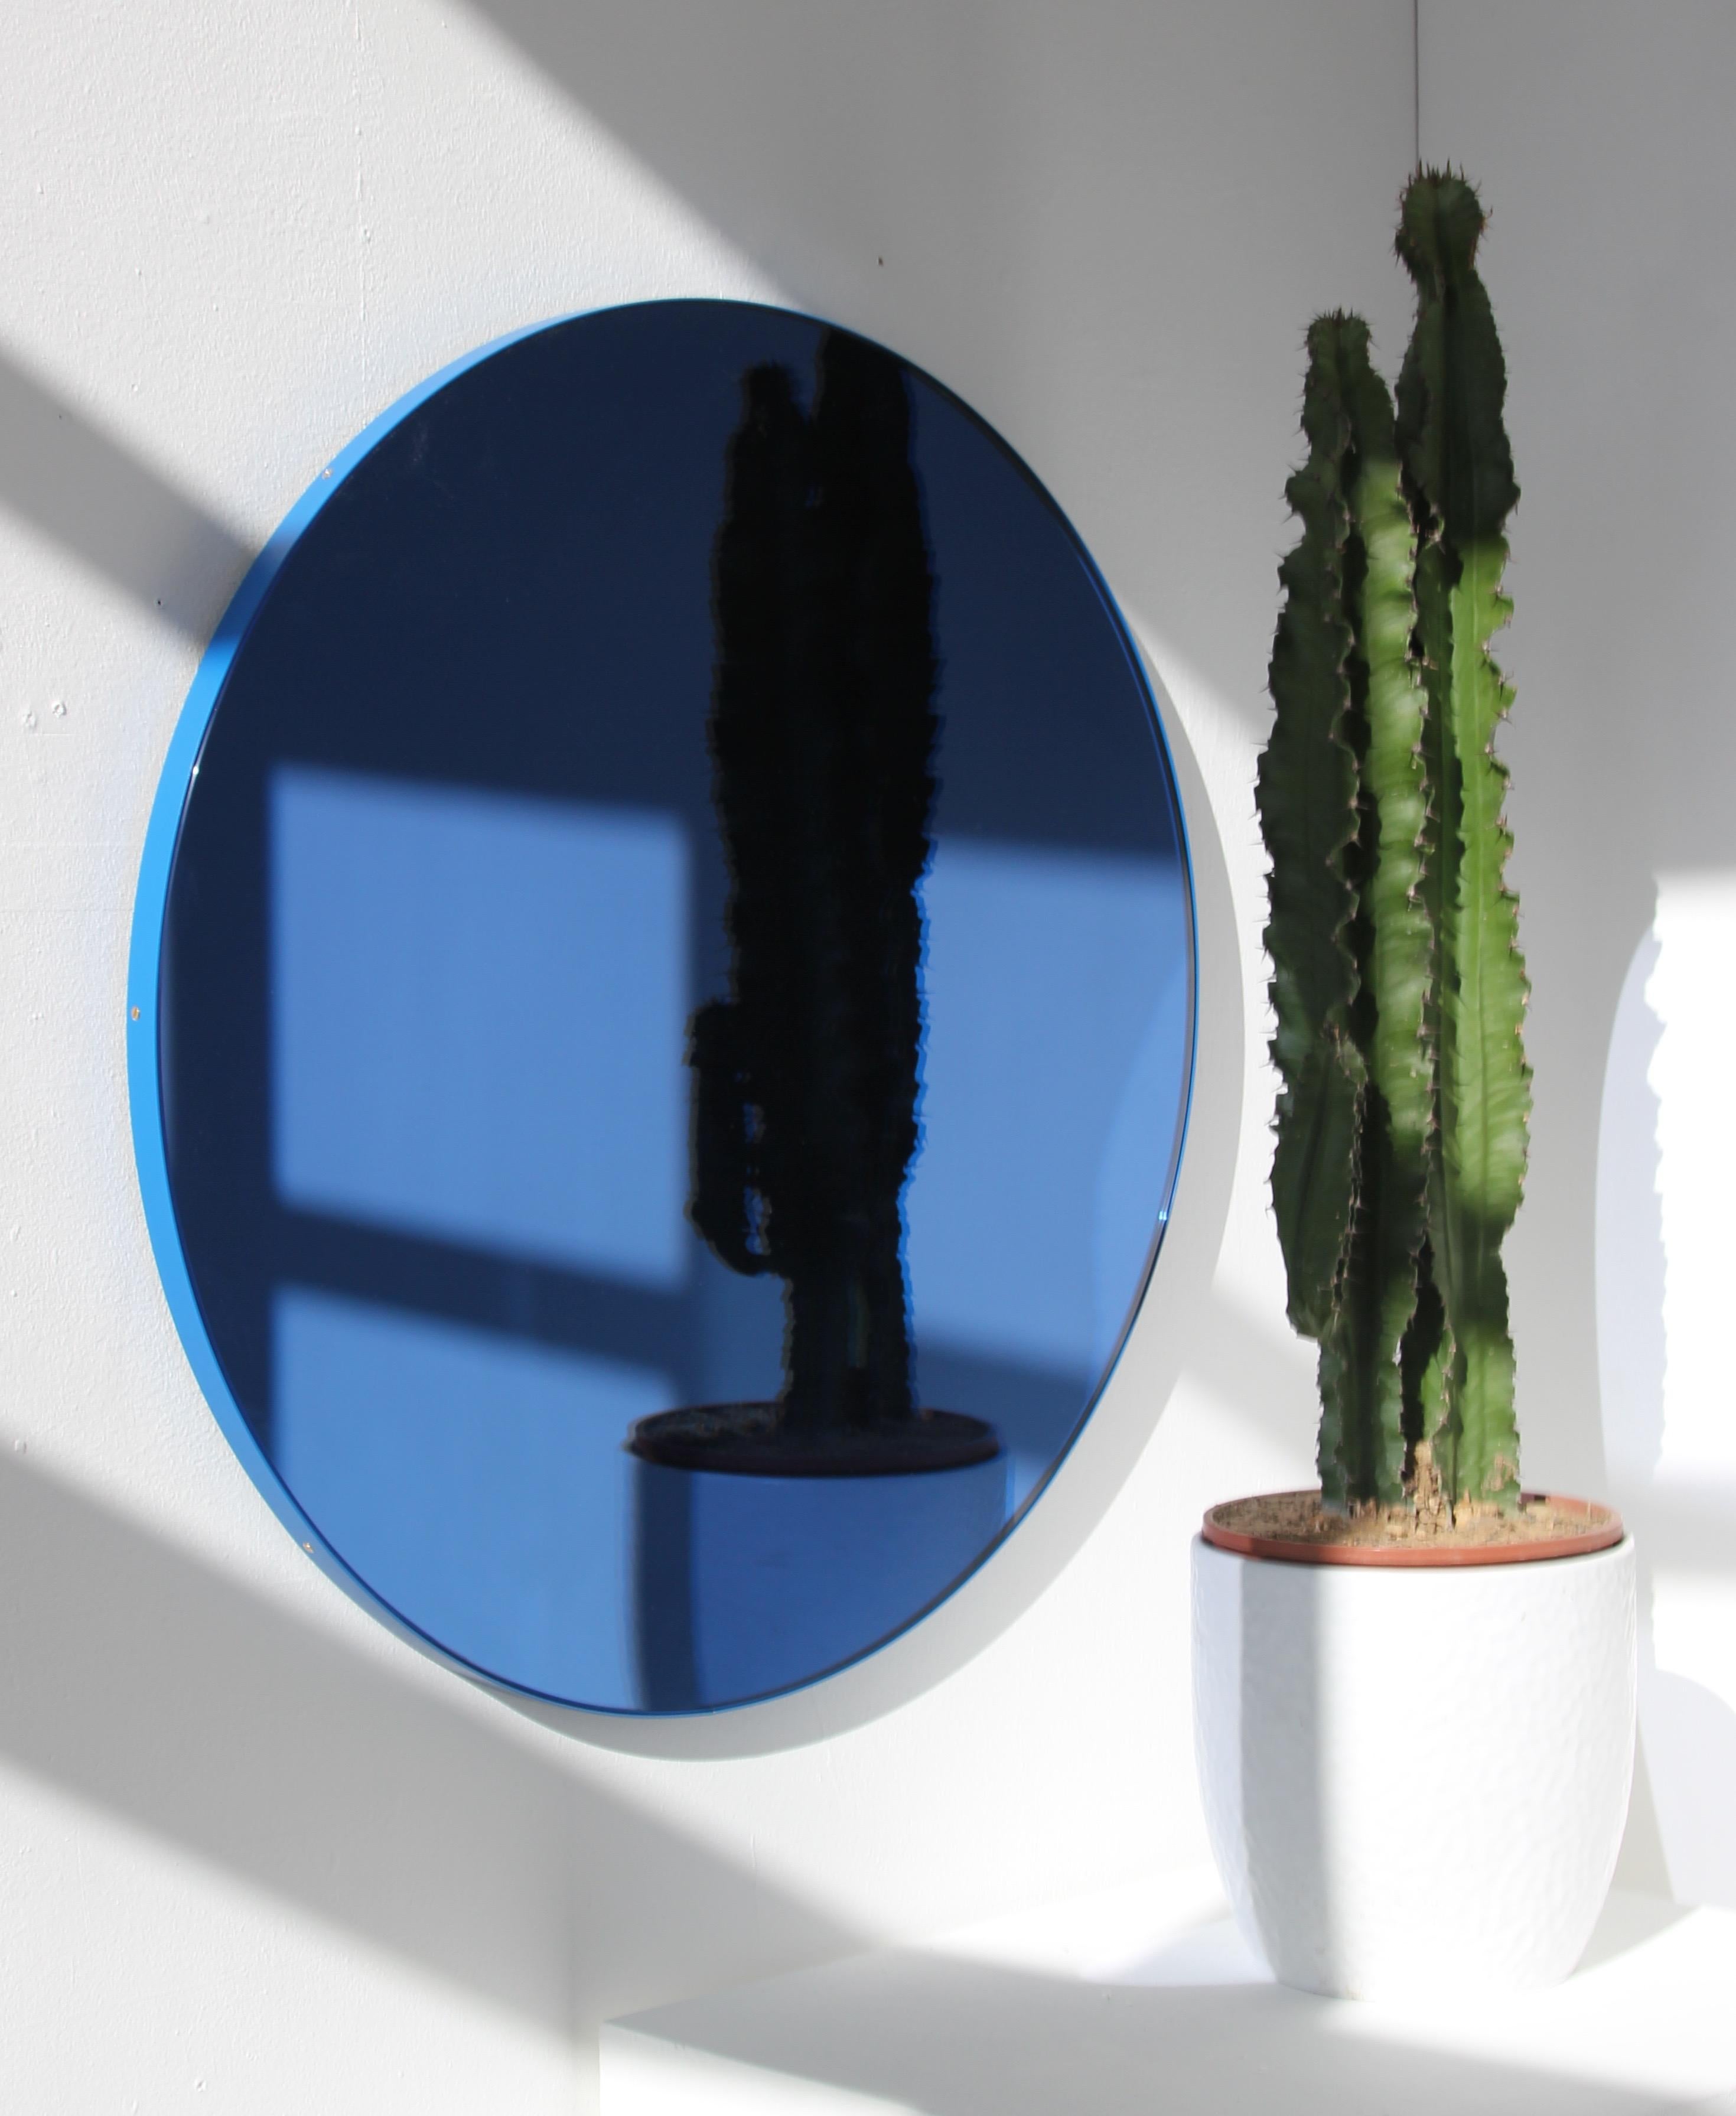 Zeitgenössischer, blau getönter, runder Spiegel mit einem blauen, pulverbeschichteten Aluminiumrahmen. Entworfen und handgefertigt in London, UK.

Die mittelgroßen, großen und extragroßen Spiegel (60, 80 und 100 cm) sind mit einem ausgeklügelten